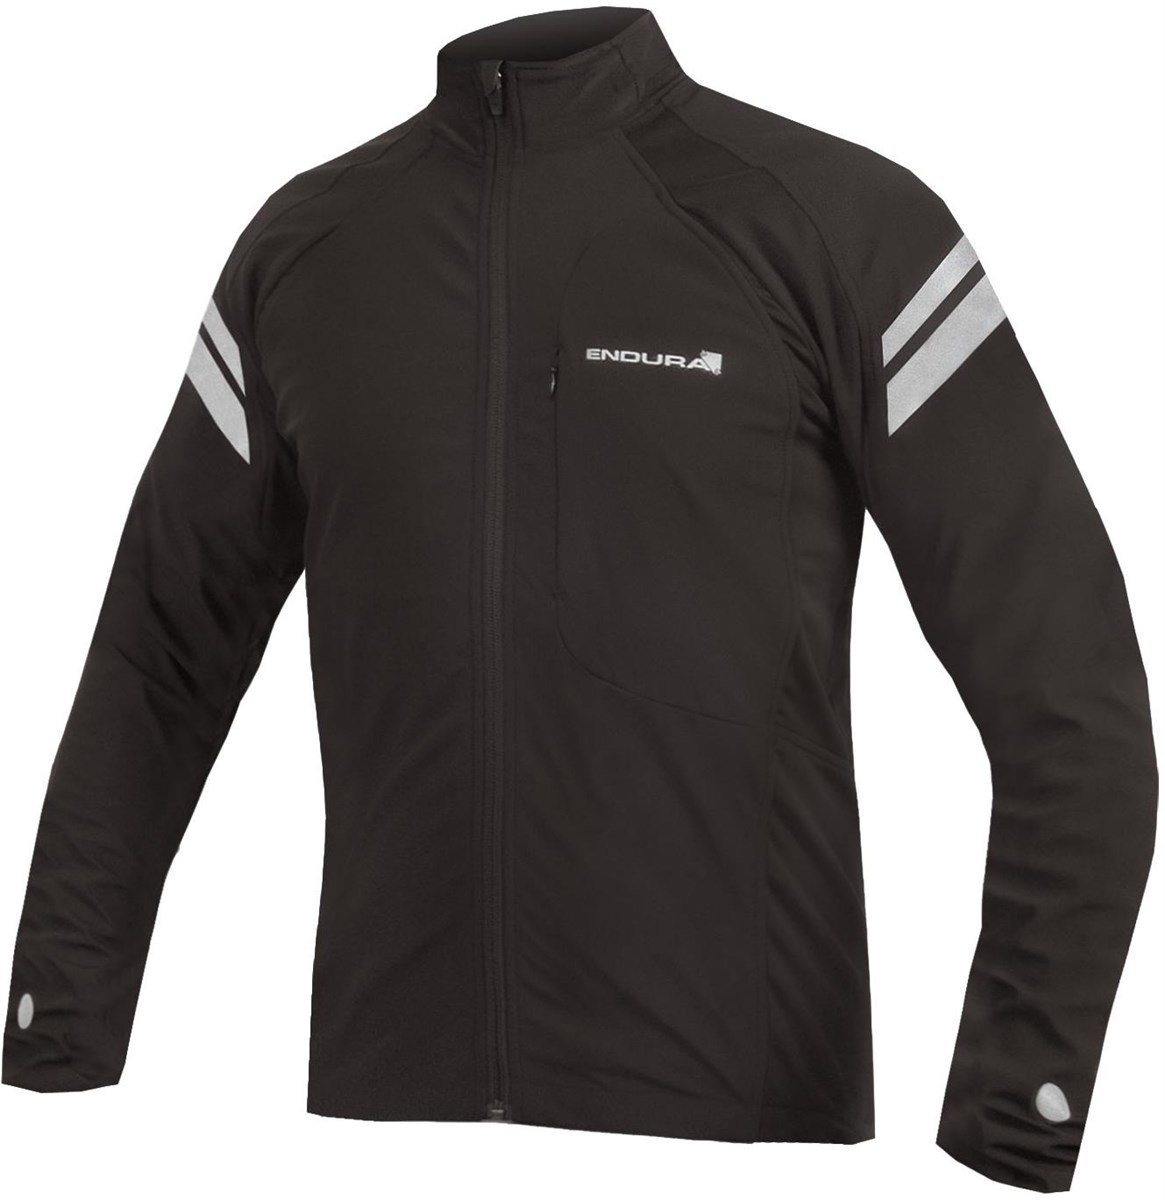 Endura Windchill II Cycling Jacket product image